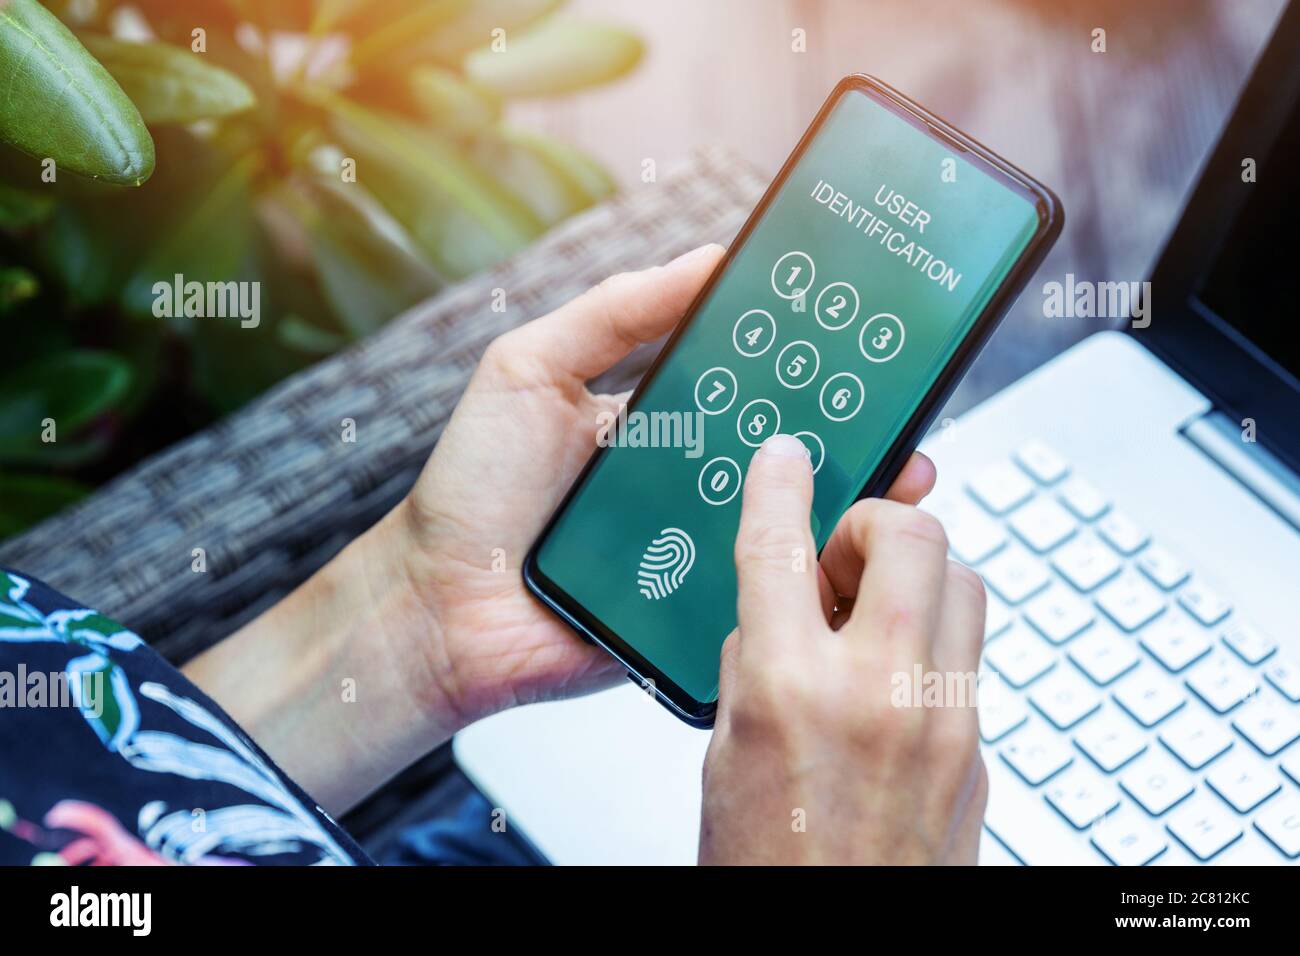 Elektronische Zahlung - Eingabe von PIN-Code in der mobilen App zur Personenidentifikation Stockfoto